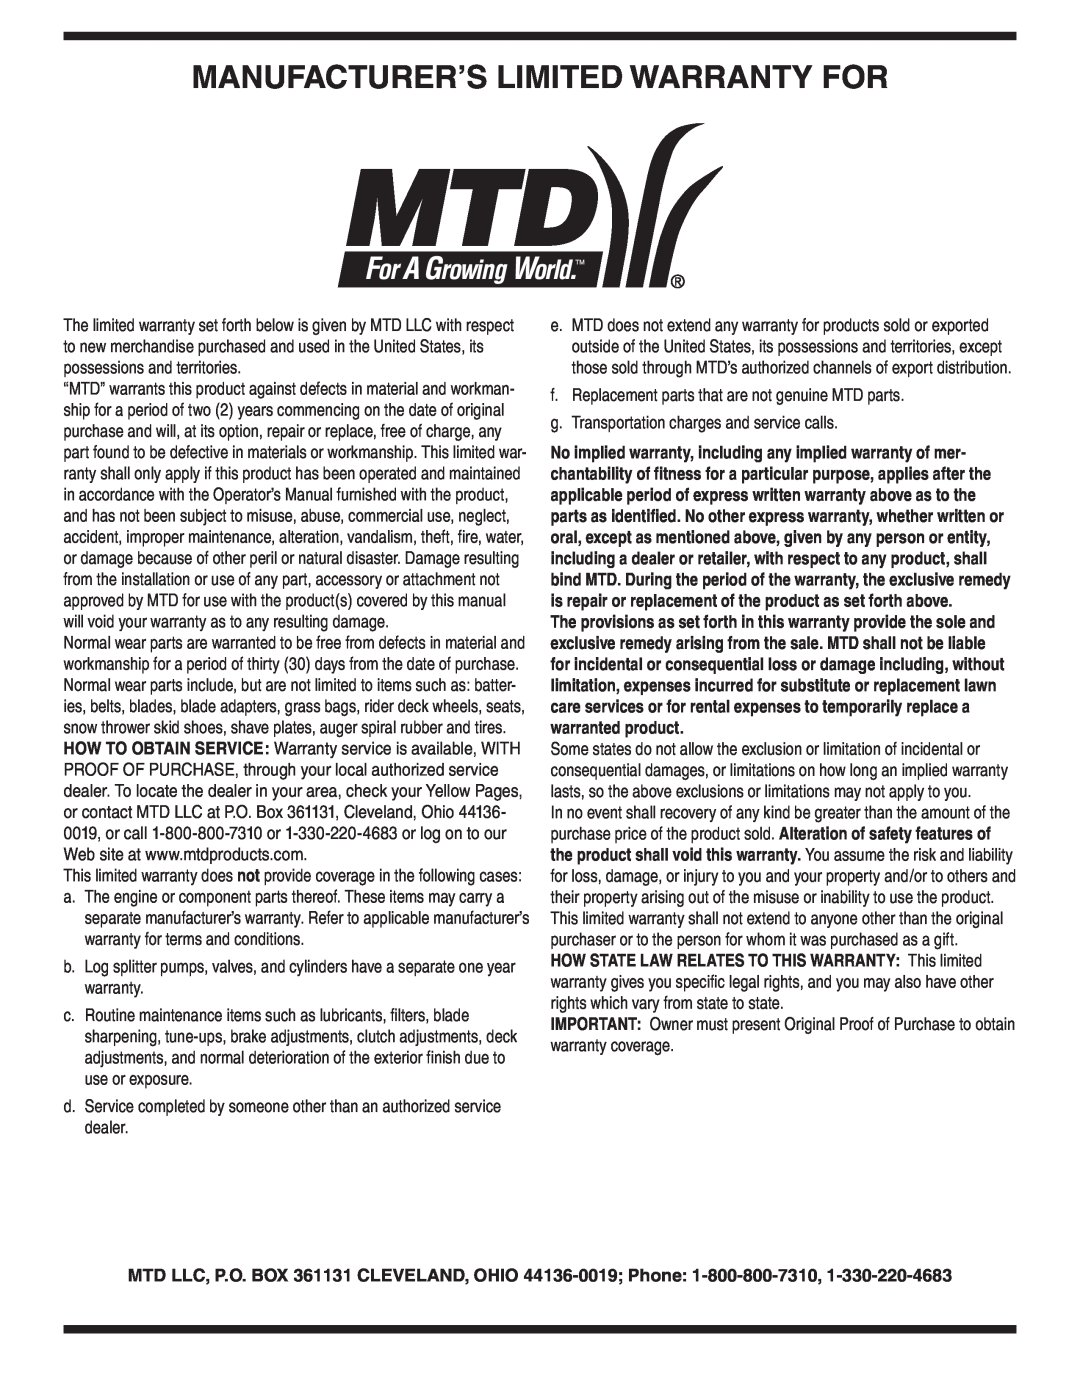 MTD Series 410 thru 420 warranty Manufacturer’S Limited Warranty For 